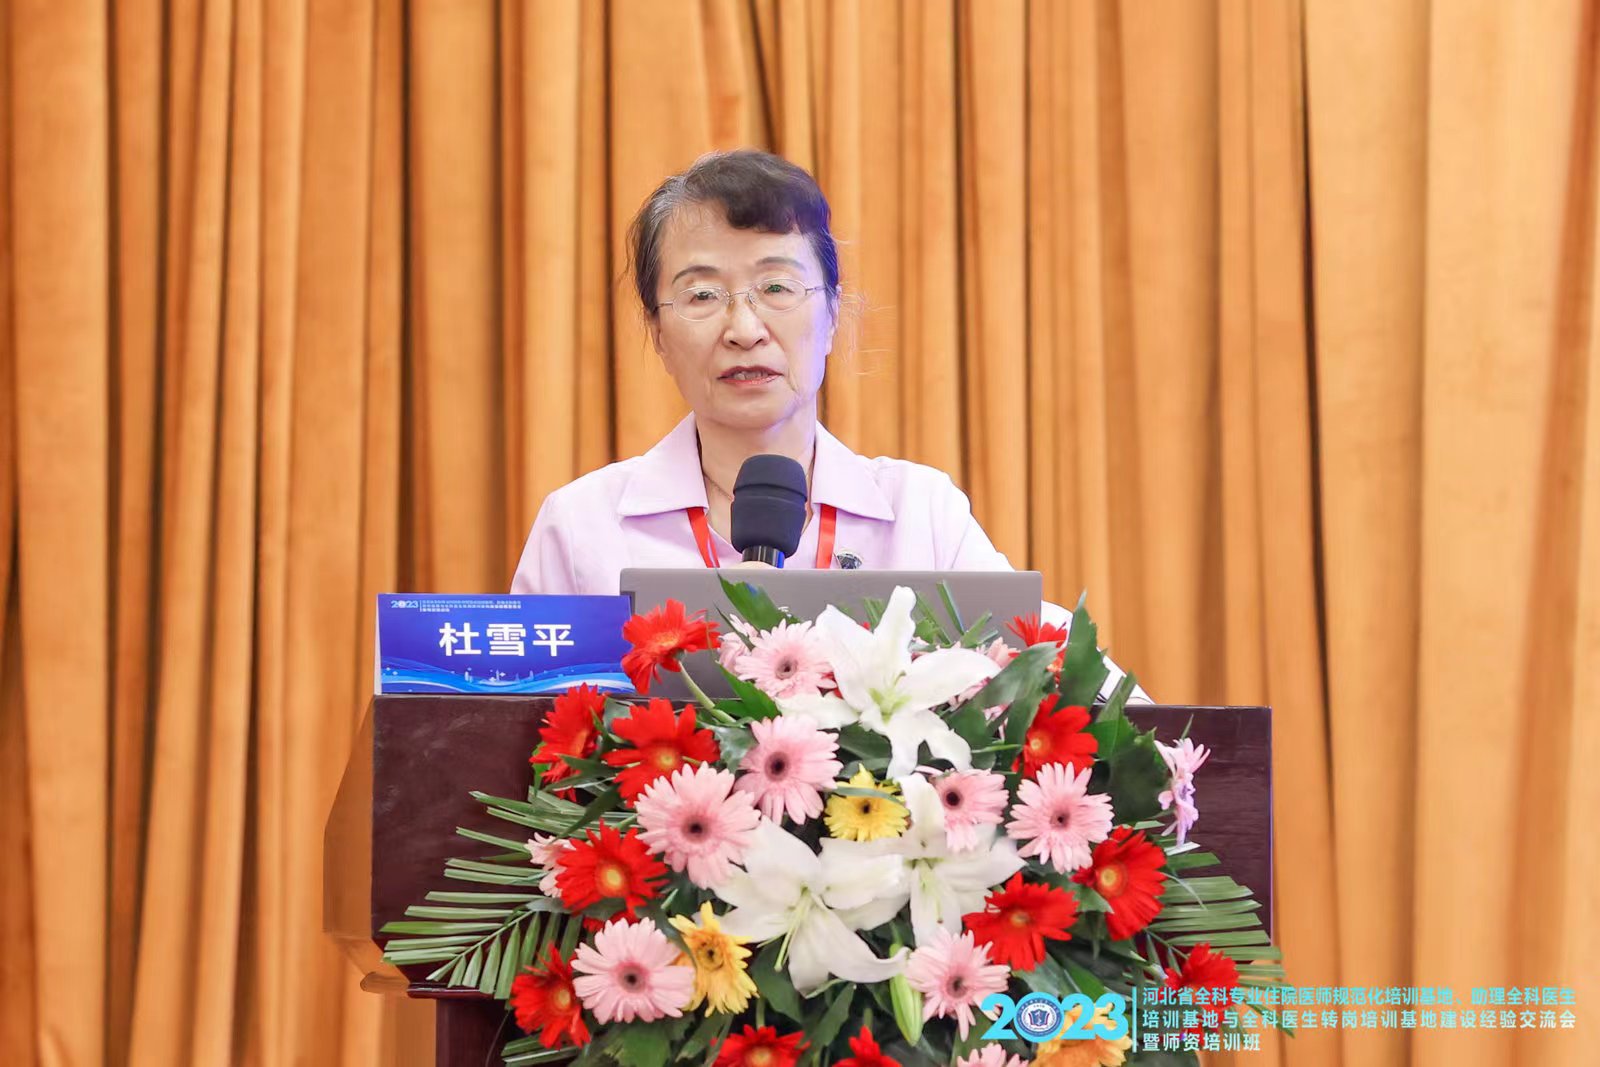 中国医师协会全科医师分会名誉会长杜雪平教授出席大会开幕式并致辞